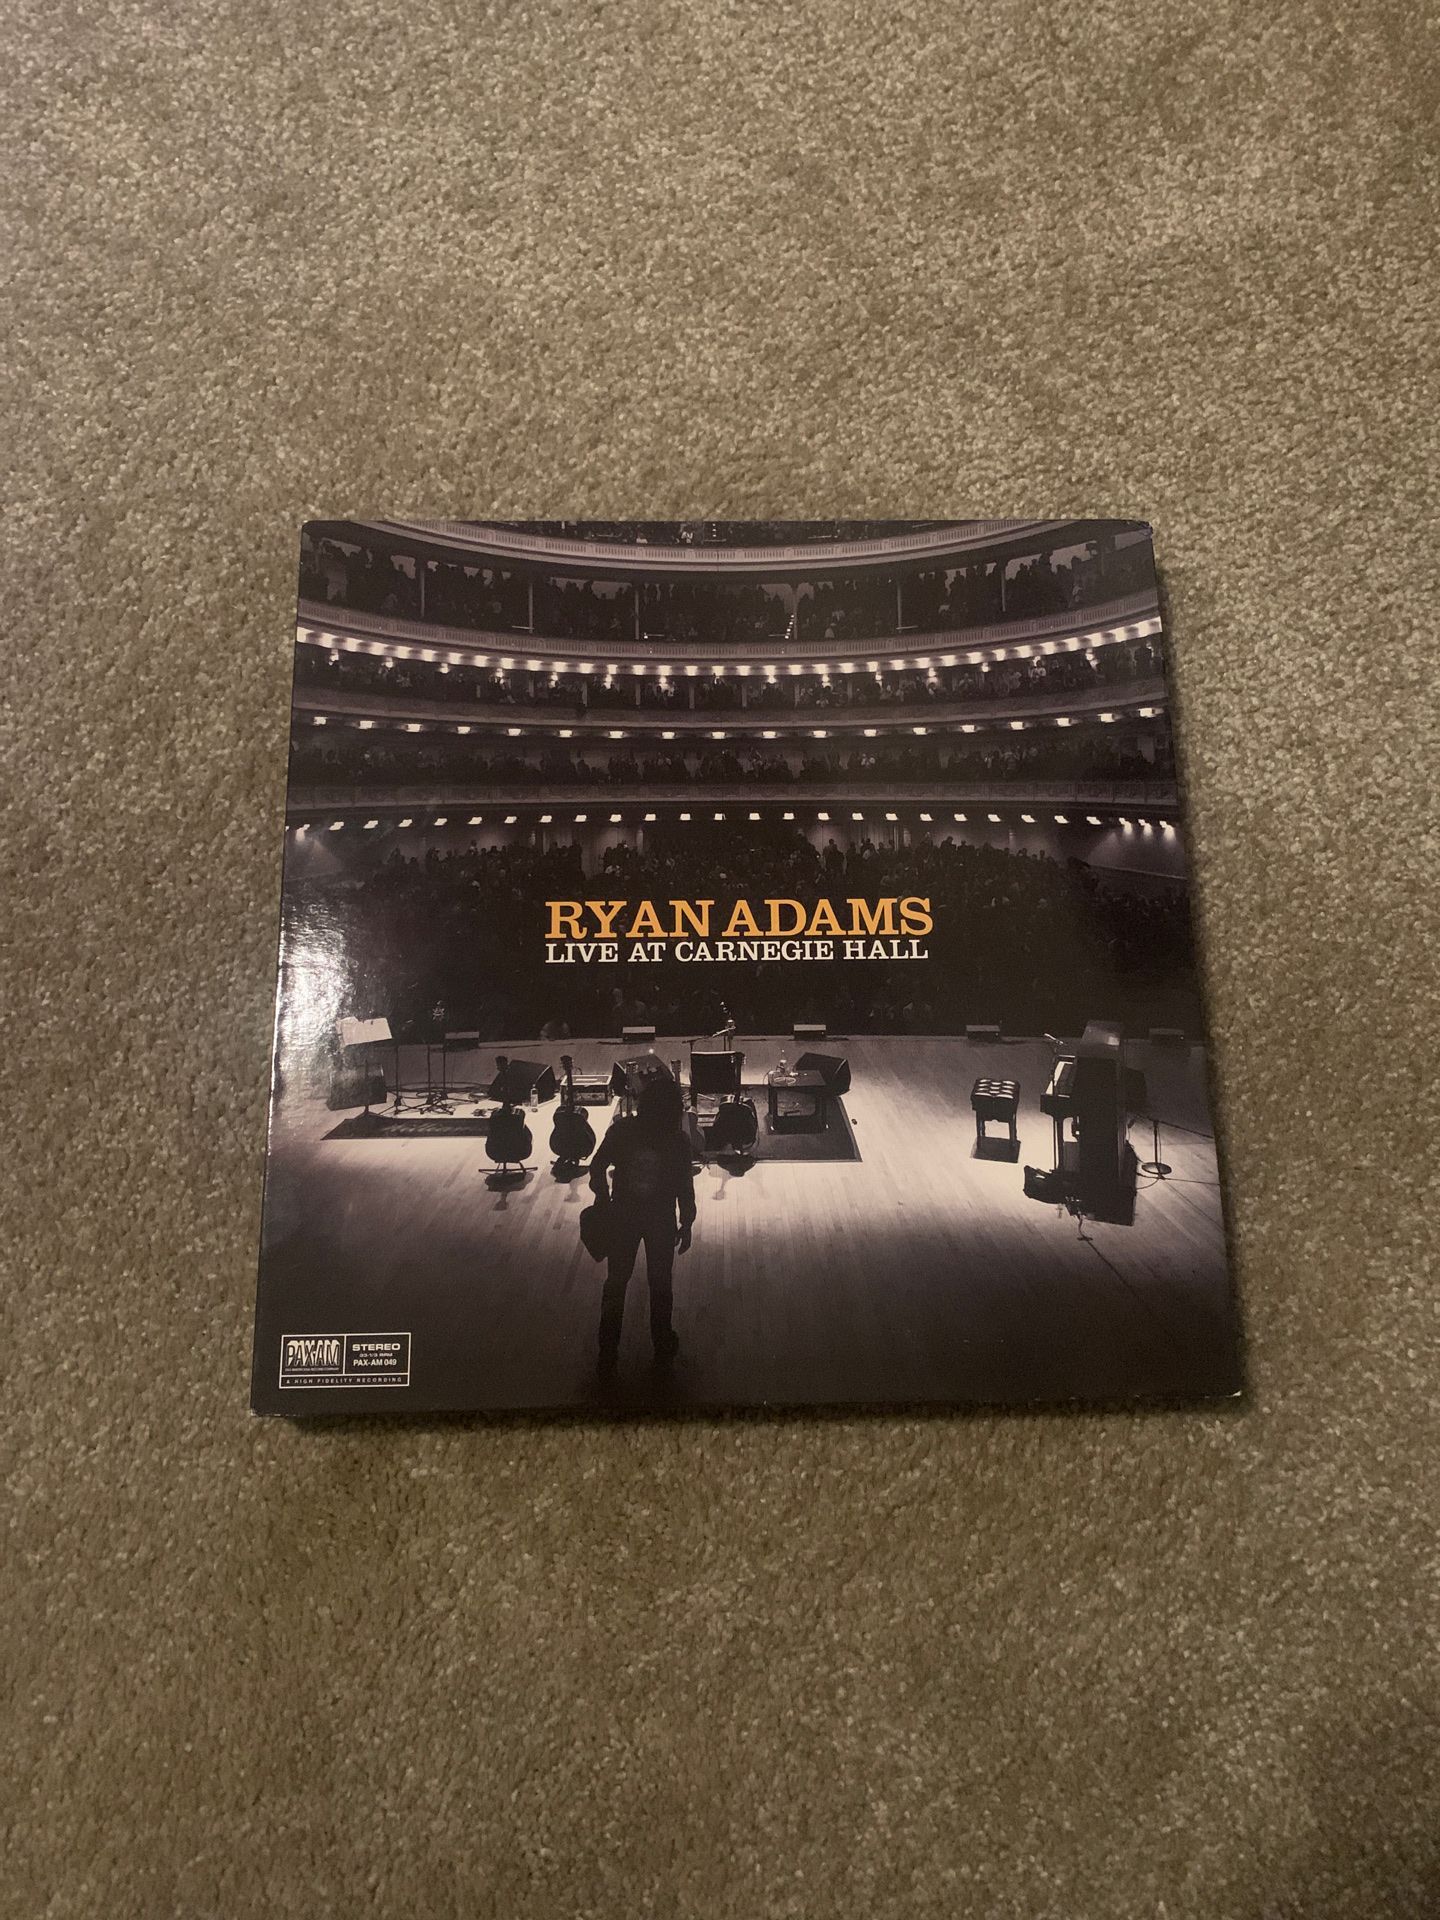 Ryan Adams 6LP Live at Carnegie Hall set. OOP limited run